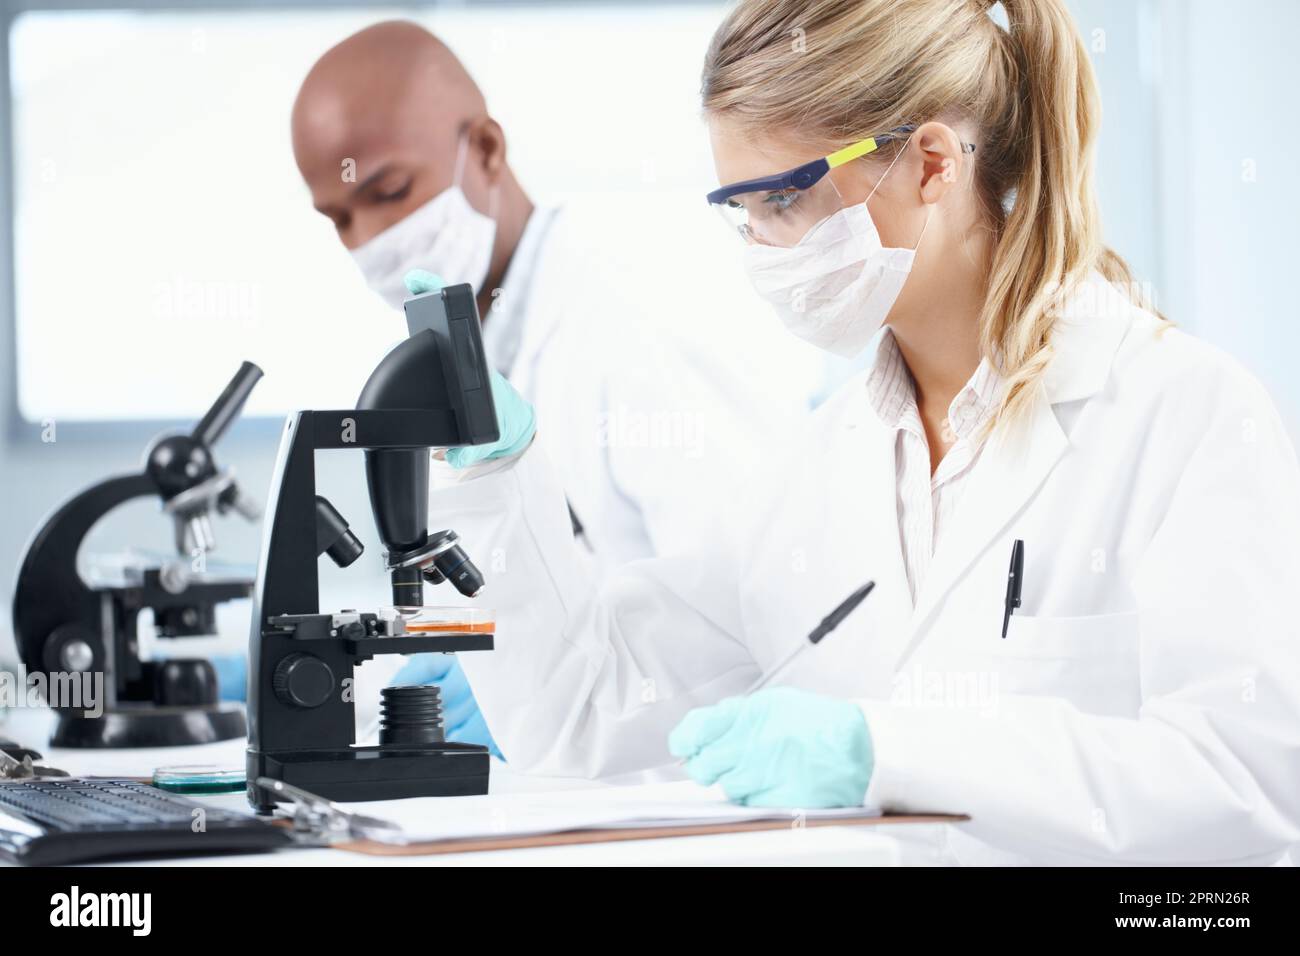 La recherche aide à améliorer la médecine moderne. Deux scientifiques travaillant dans le laboratoire tout en prenant des notes. Banque D'Images